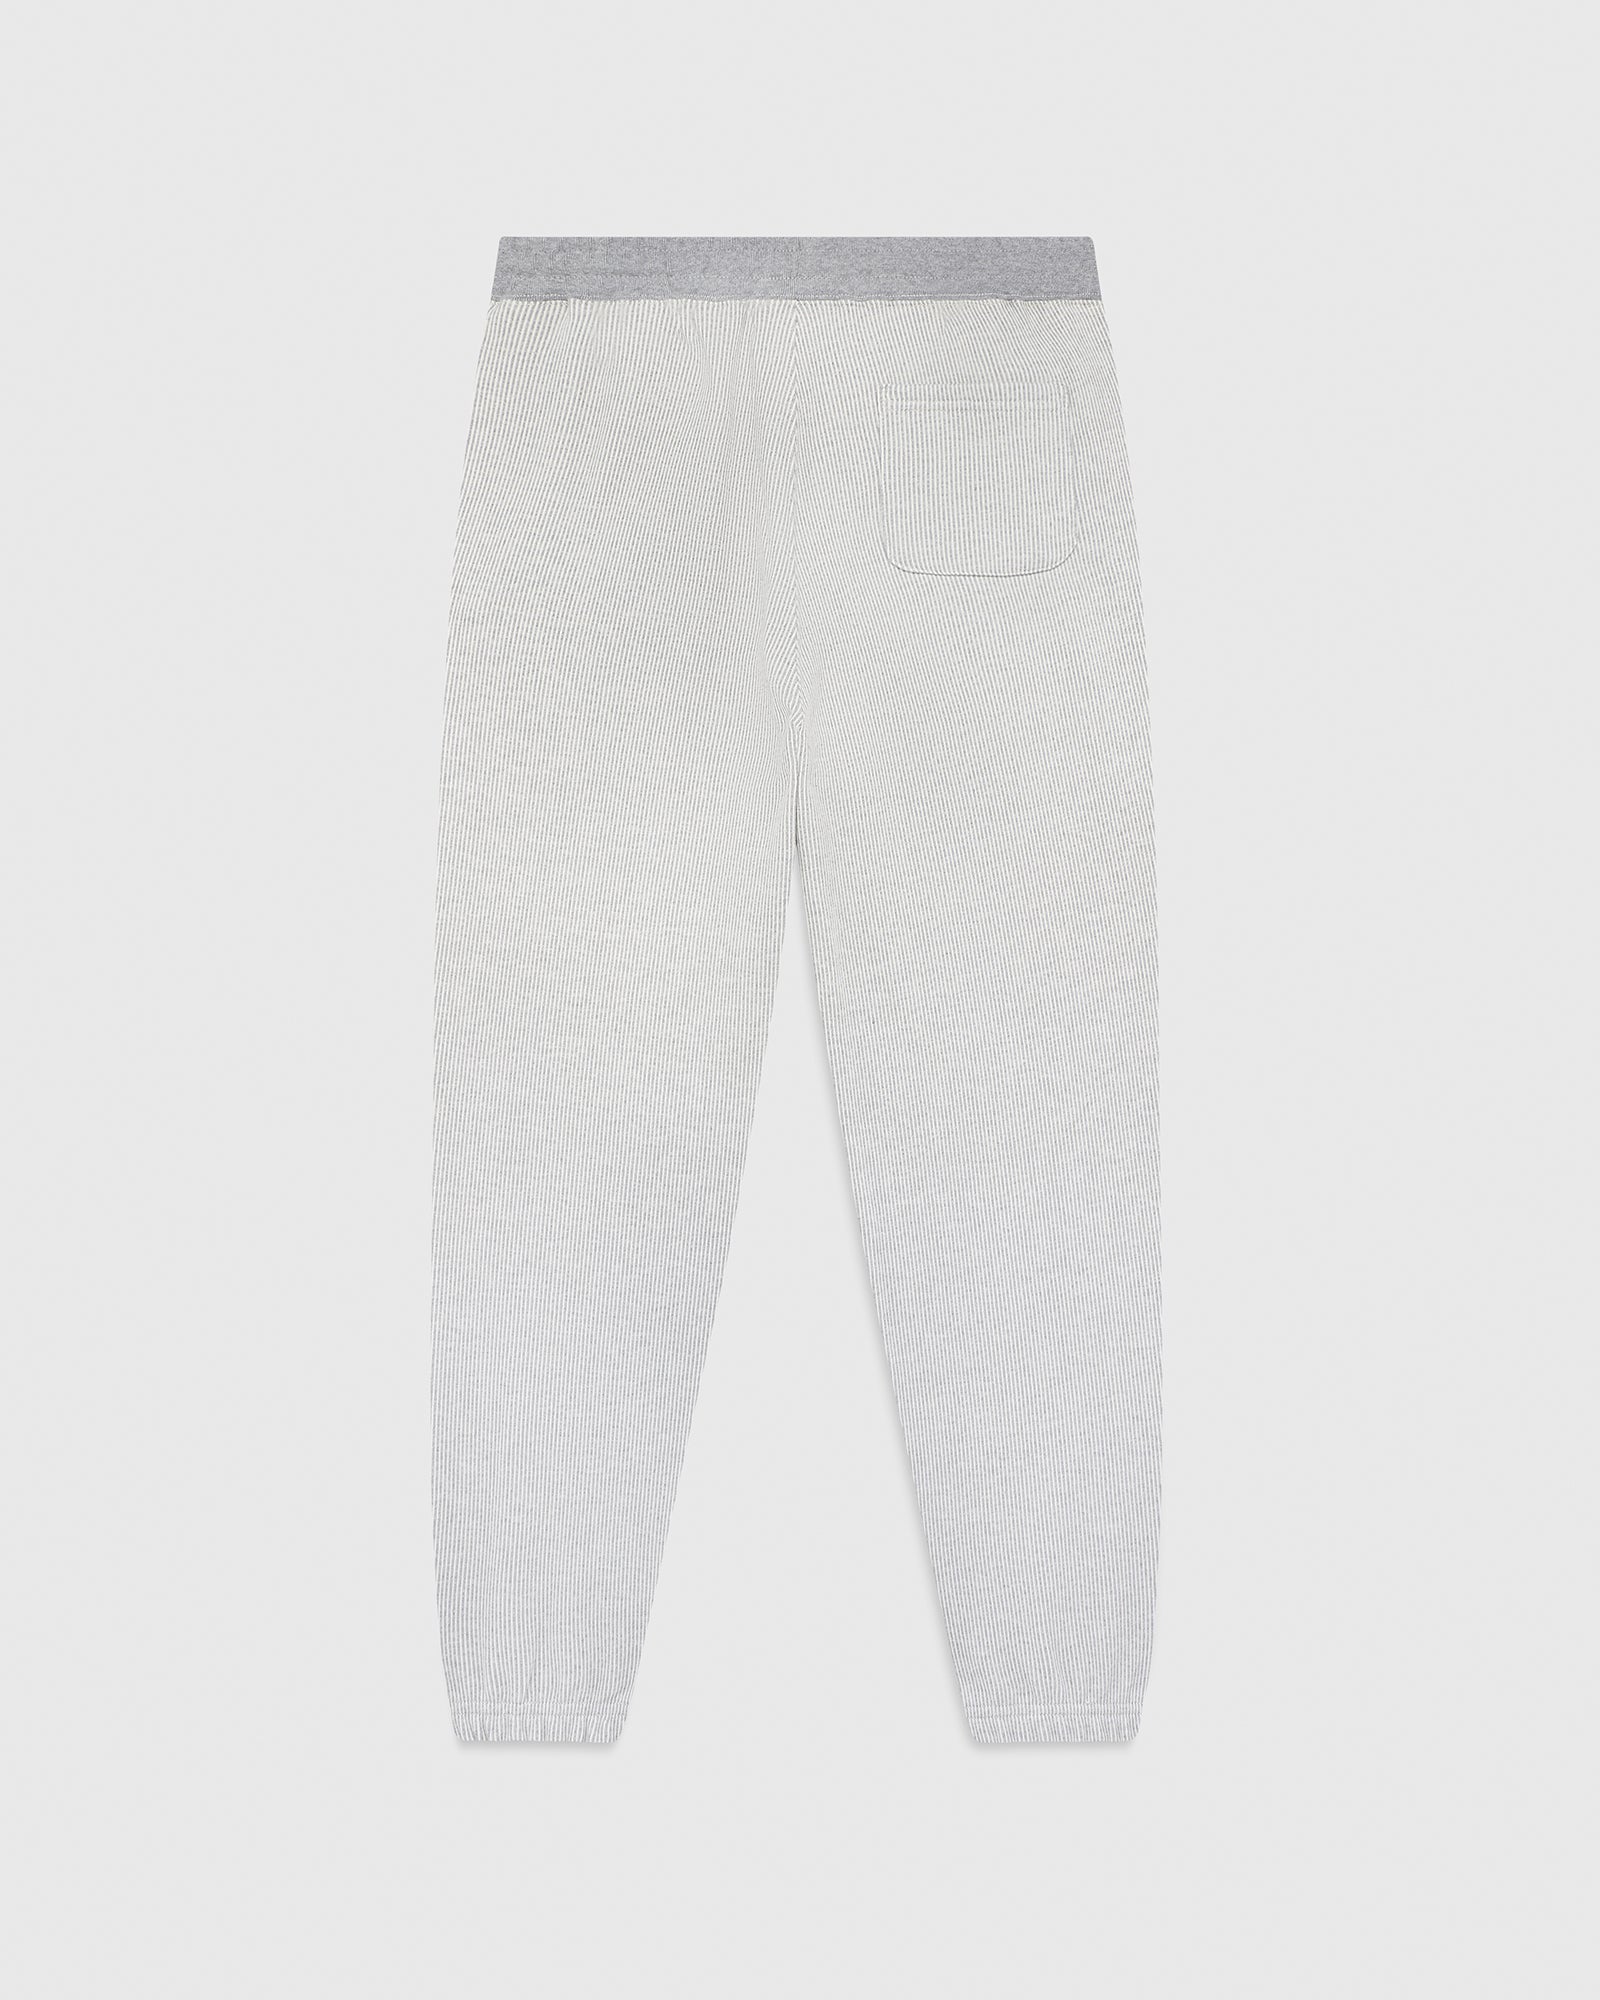 Seersucker Fleece Relaxed Fit Sweatpant - Grey/Cream